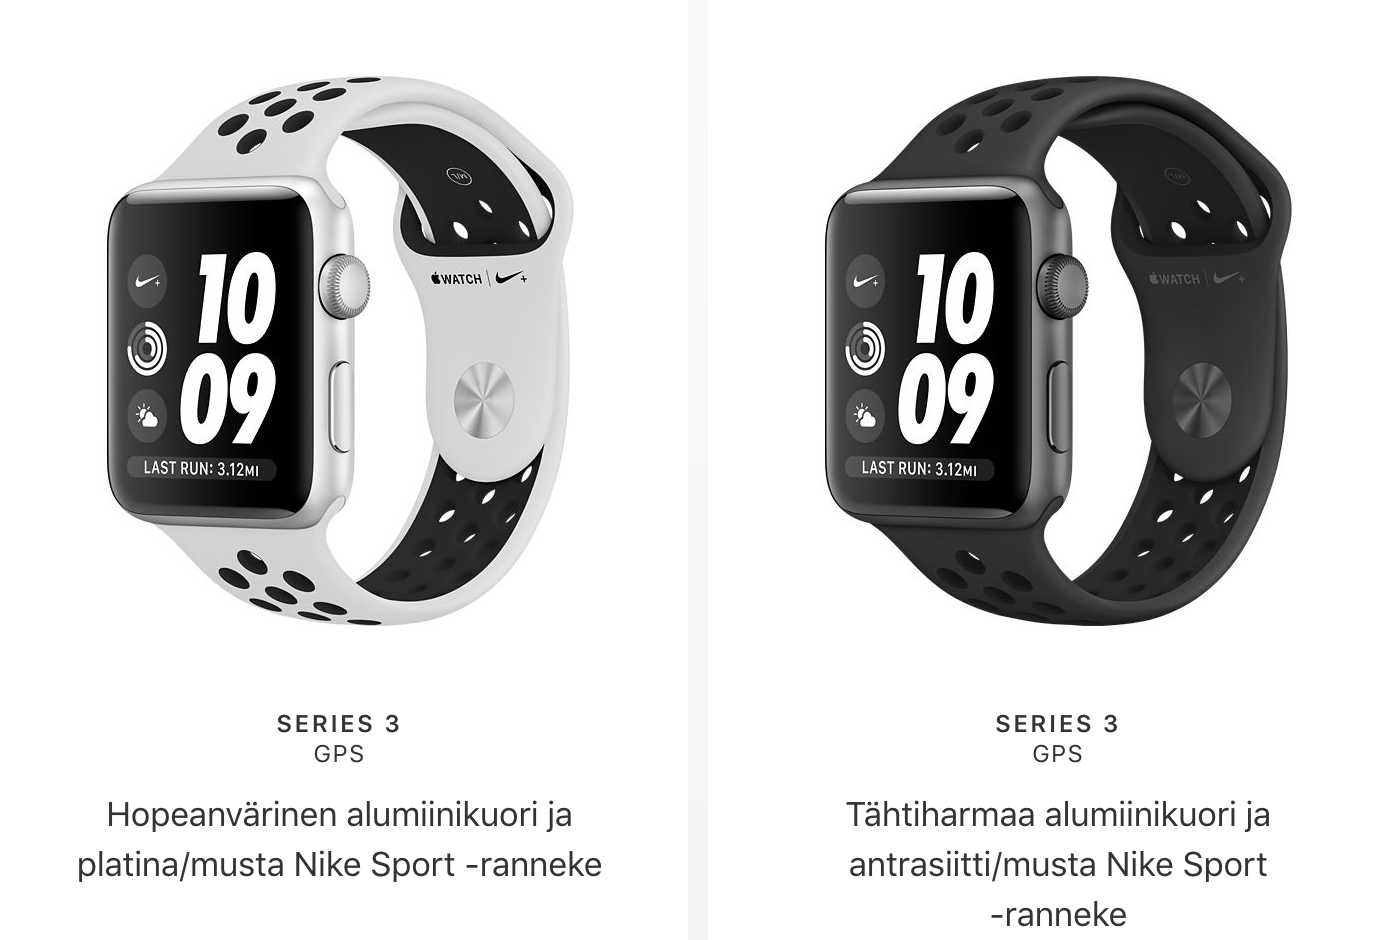 Uudet Apple Watch Nike+:t tulivat myyntiin | Mobiili.fi